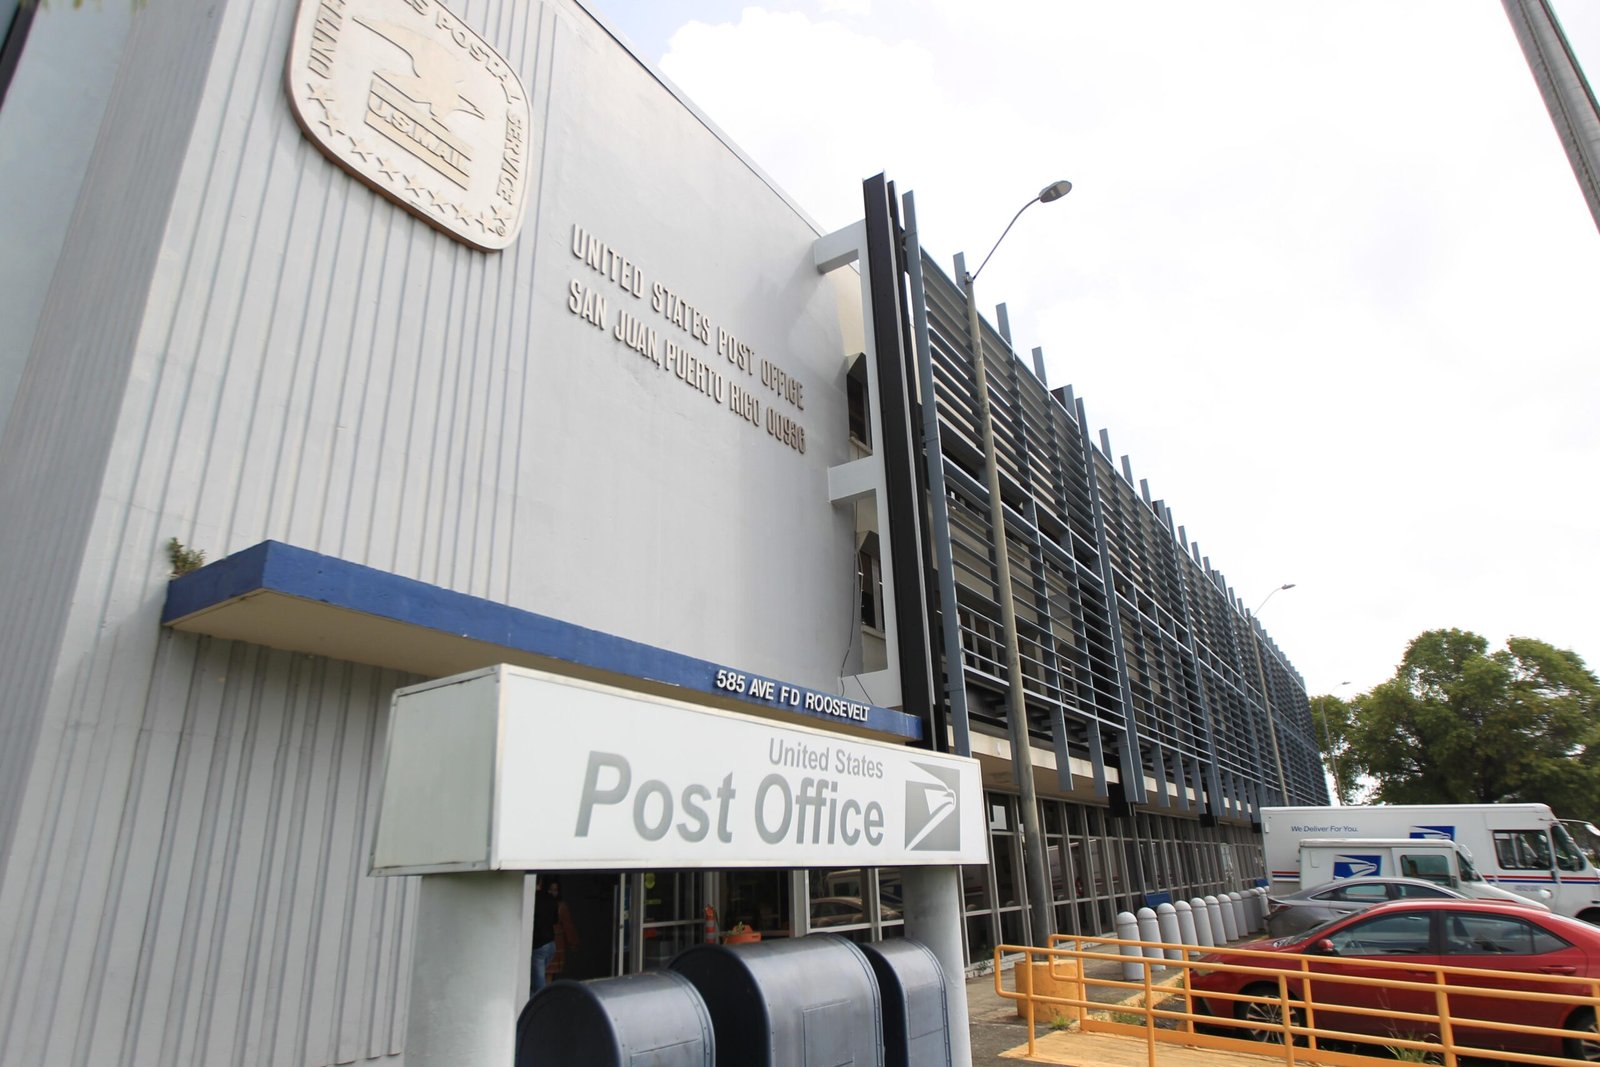 oficina de correos en puerto rico scaled